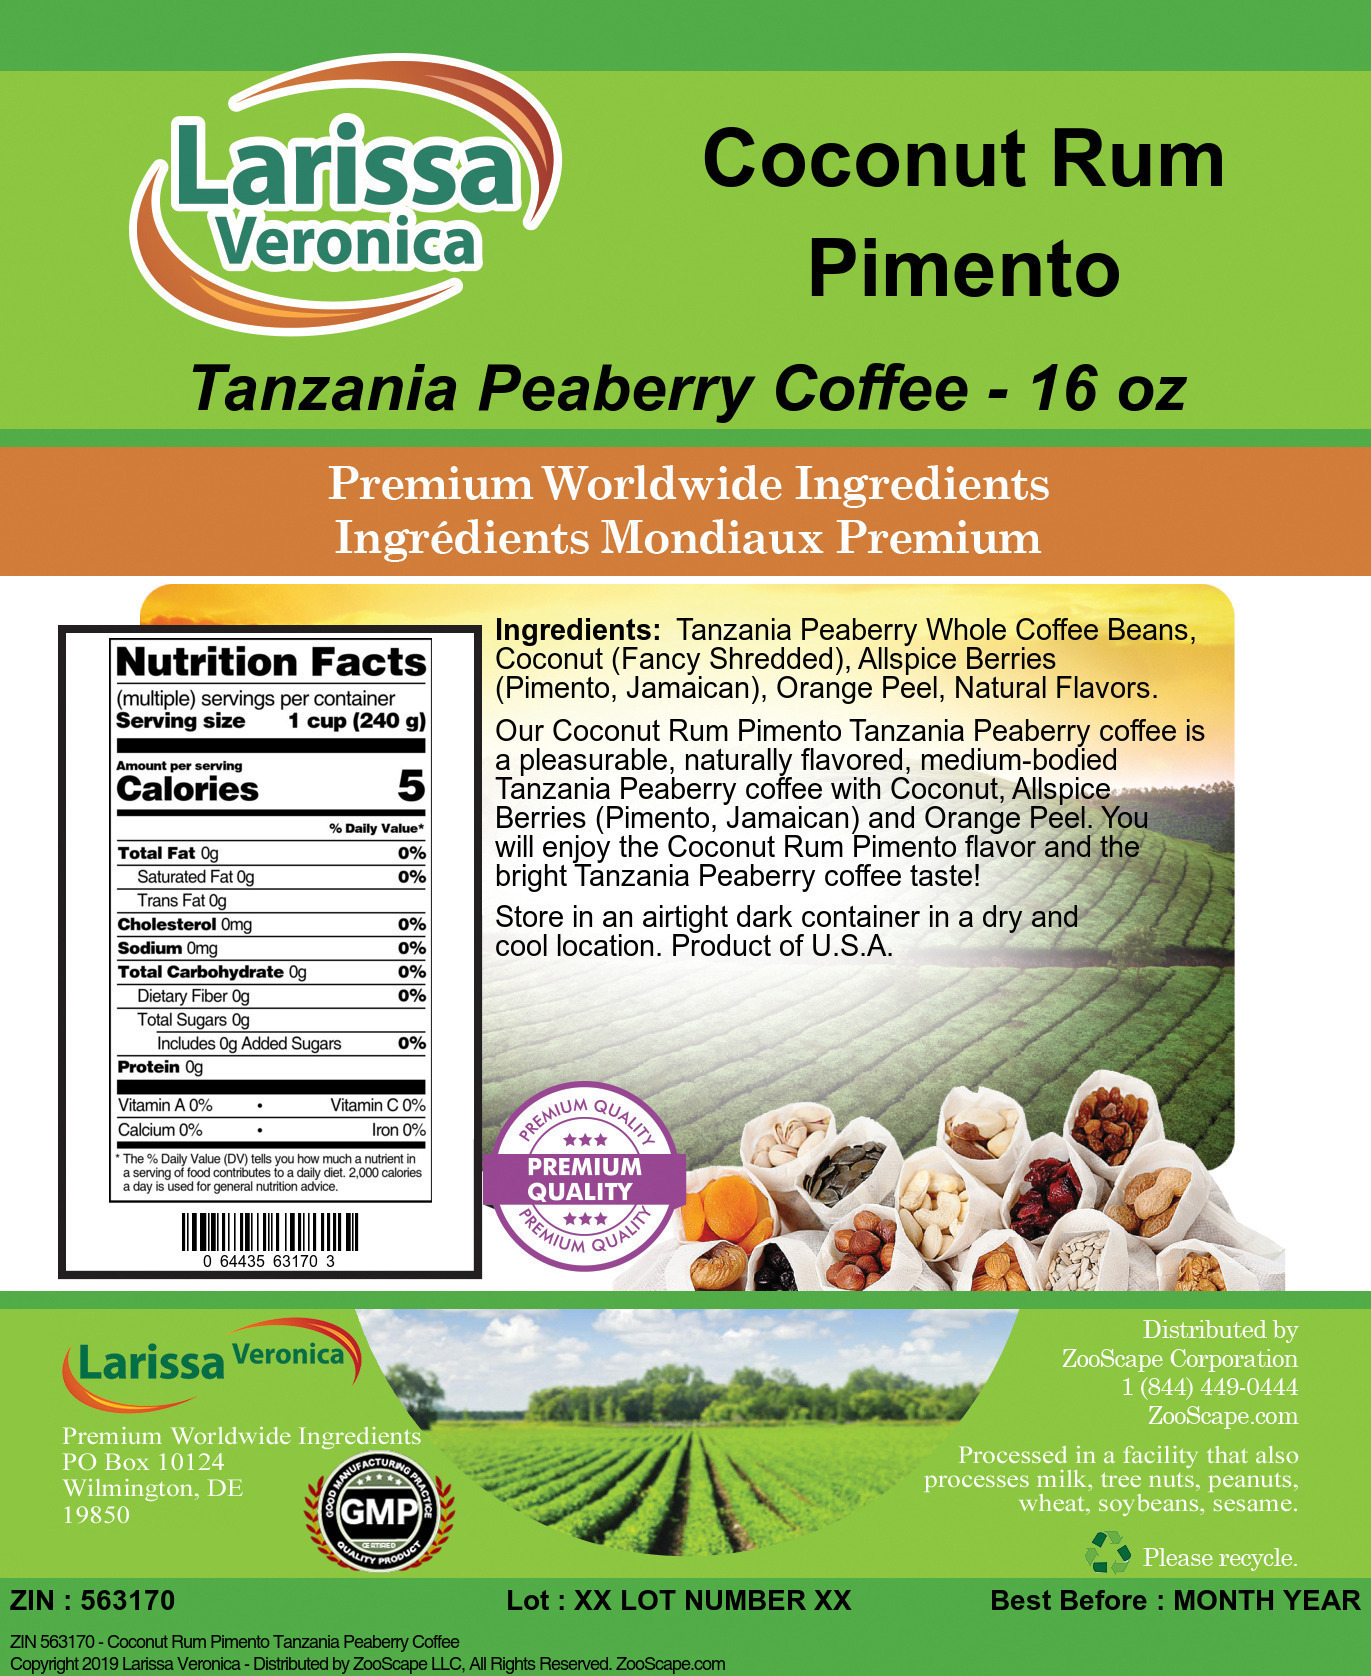 Coconut Rum Pimento Tanzania Peaberry Coffee - Label